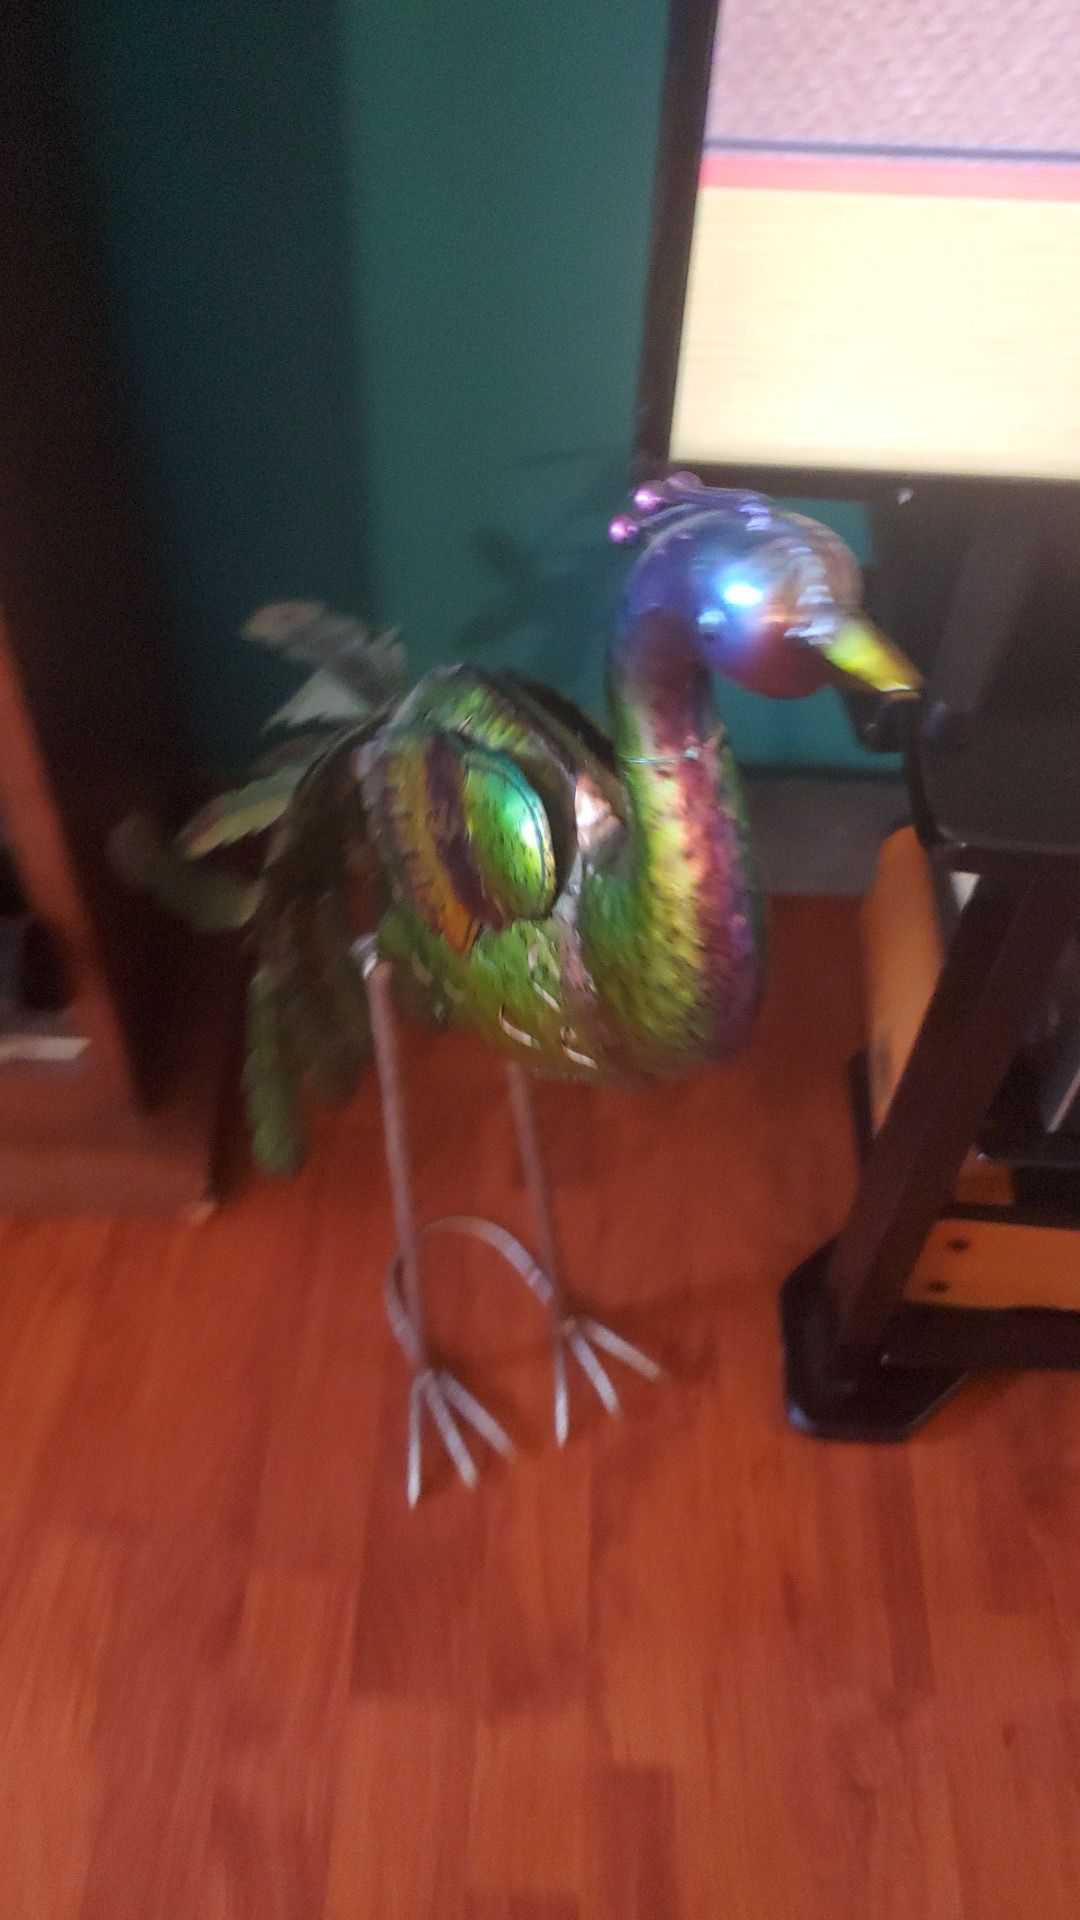 Metal peacock